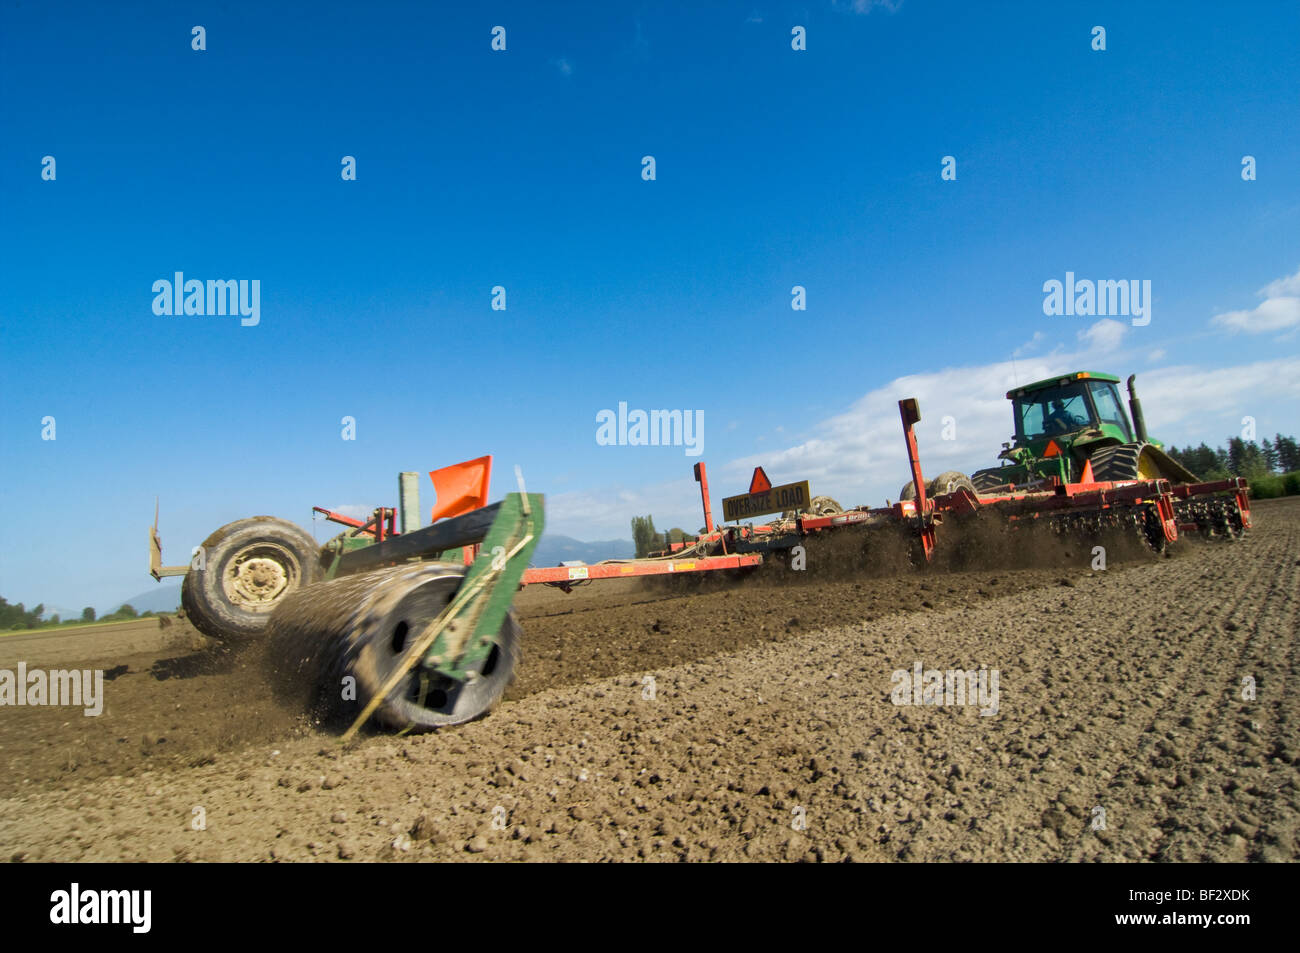 Agricoltura - UN trattore tirando una trinciatrice si prepara un terreno fertile per la semina delle patate / vicino a Burlington, Washington, Stati Uniti d'America. Foto Stock